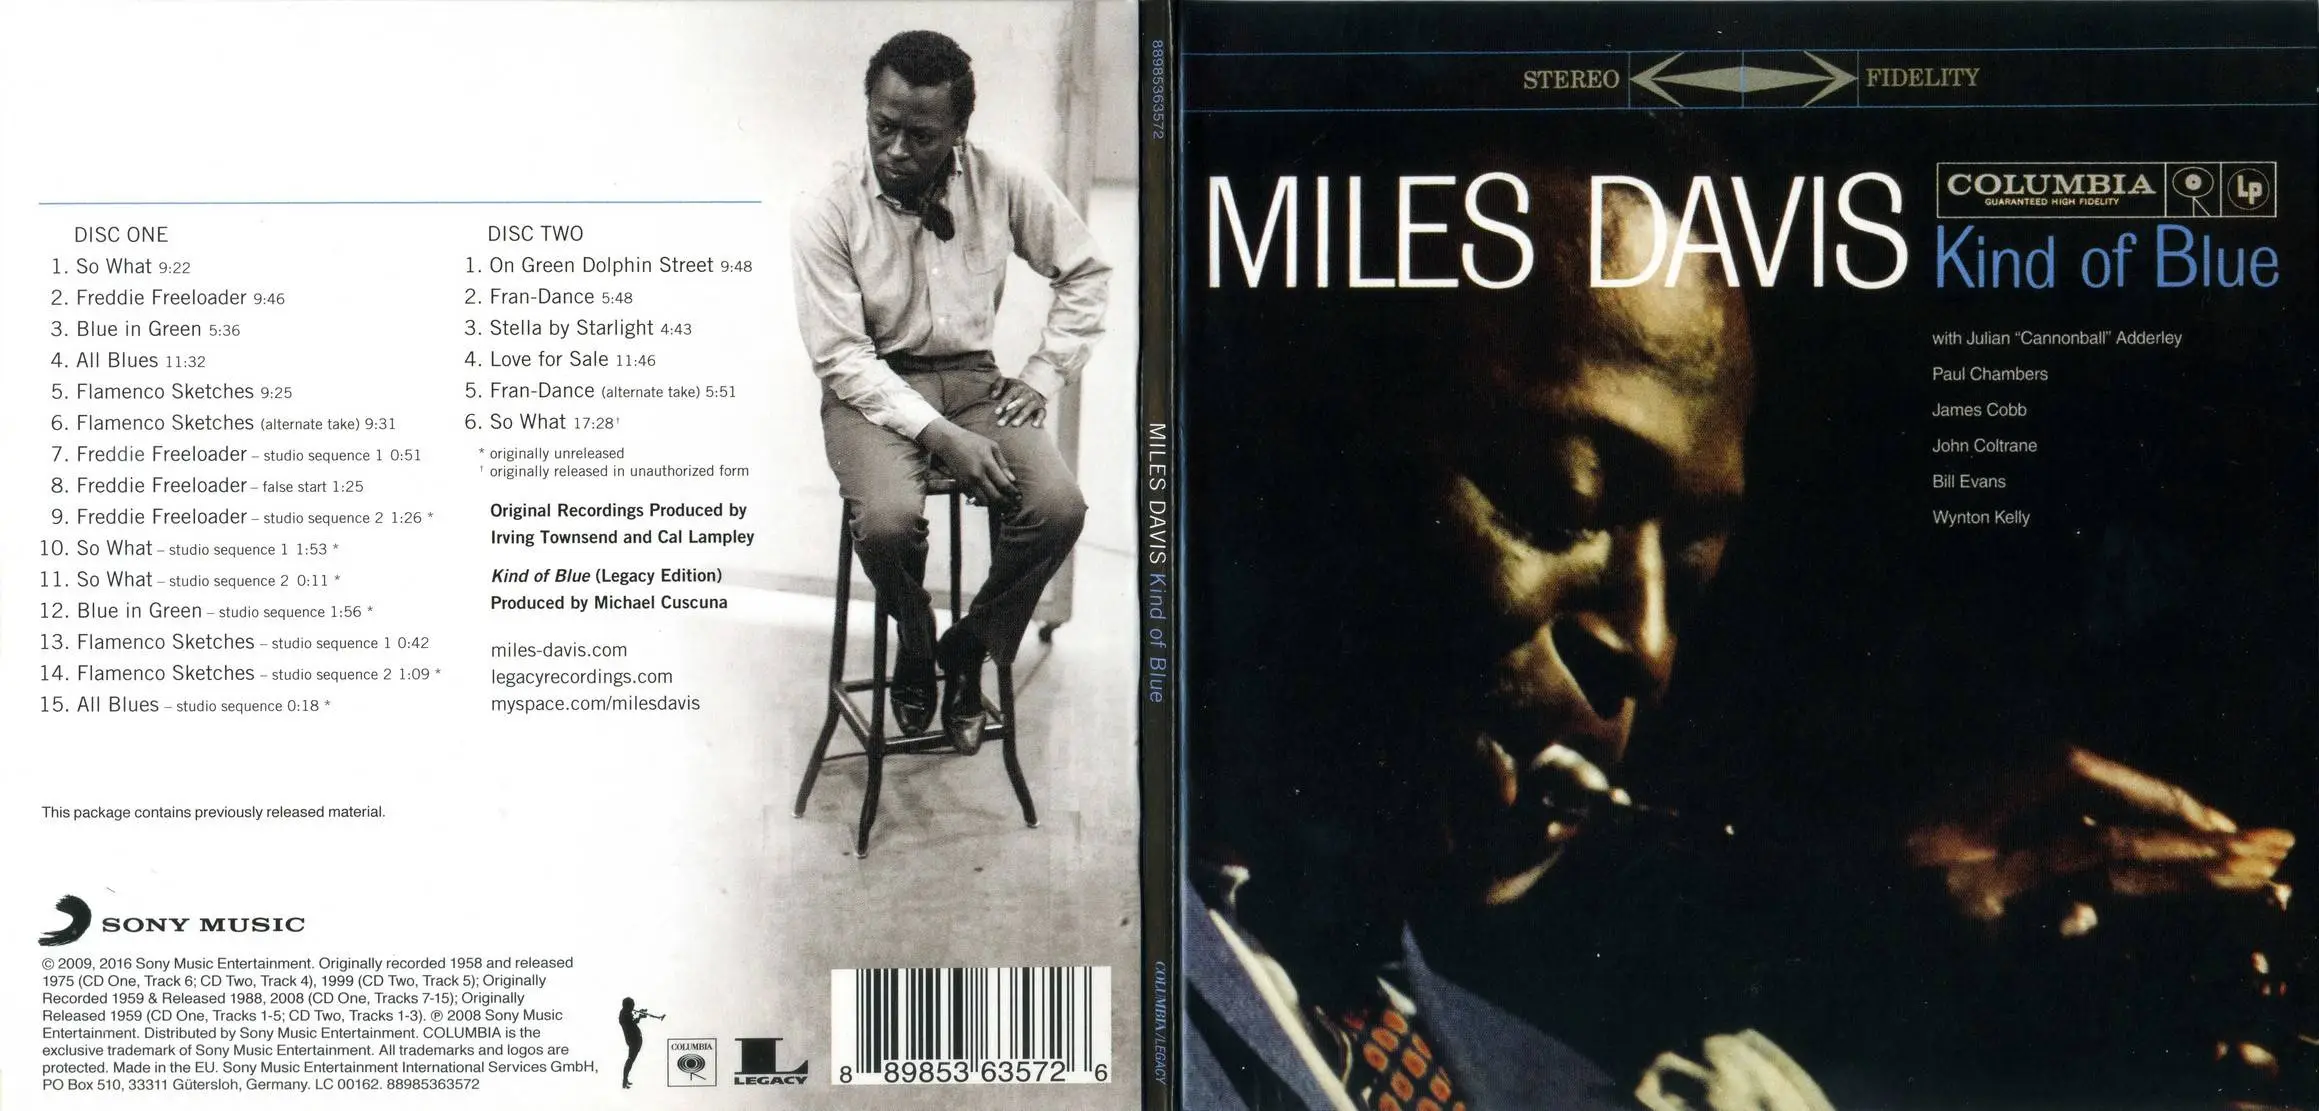 Blue miles. Miles Davis - kind of Blue (1959). Miles Davis kind of Blue обложка. Miles Davis - kind of Blue (Full album) 1959. Miles Davis - Blue in Green год.